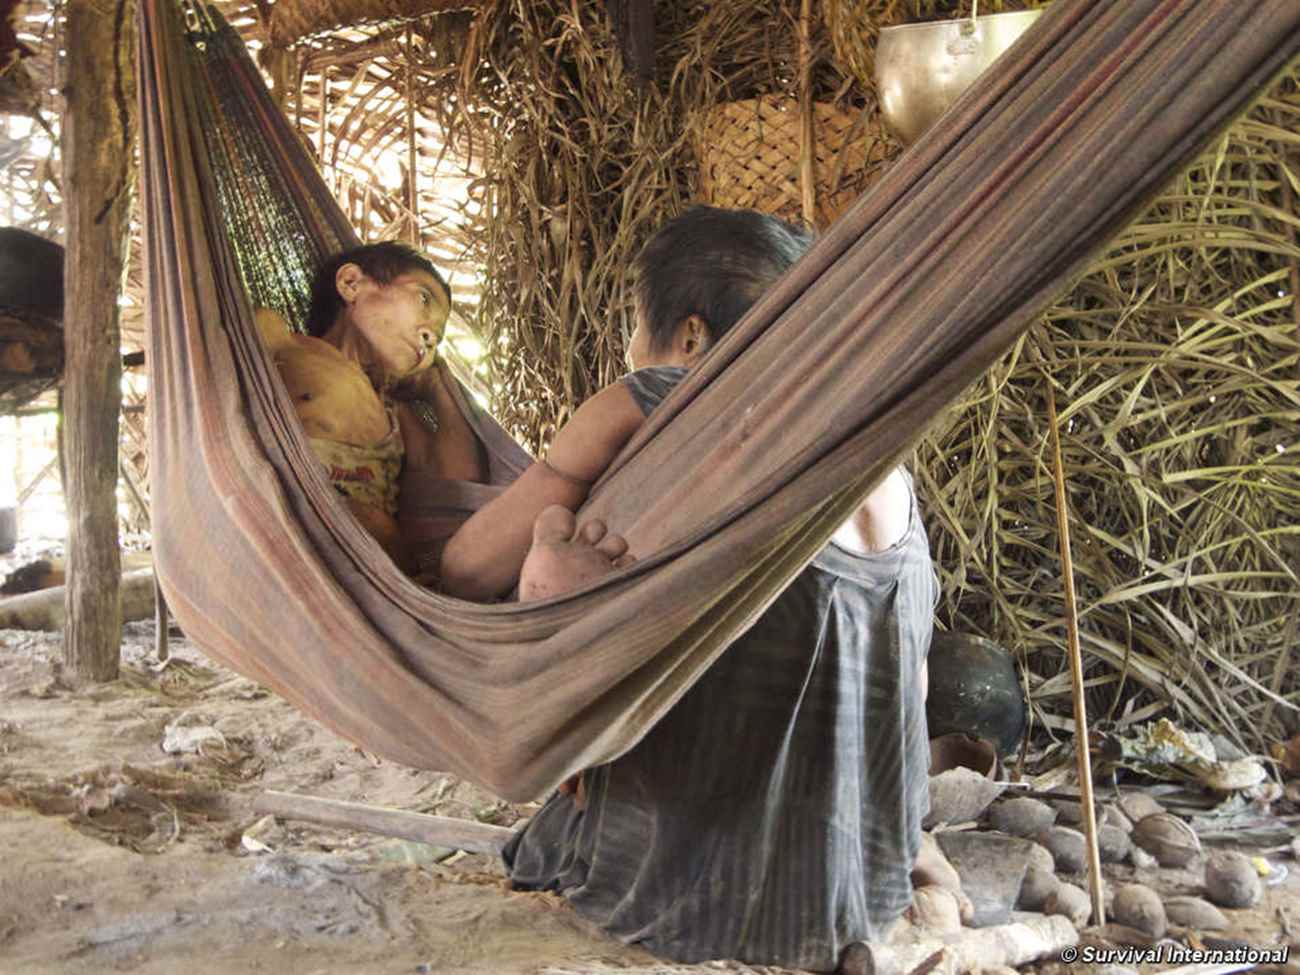 Jakarewyj e sua irmã Amakaria foram forçados a fazer contato em dezembro de 2014. Agora estão muito doentes com tuberculose porque as autoridades brasileiras não forneceram tratamento de saúde adequado. © Survival International